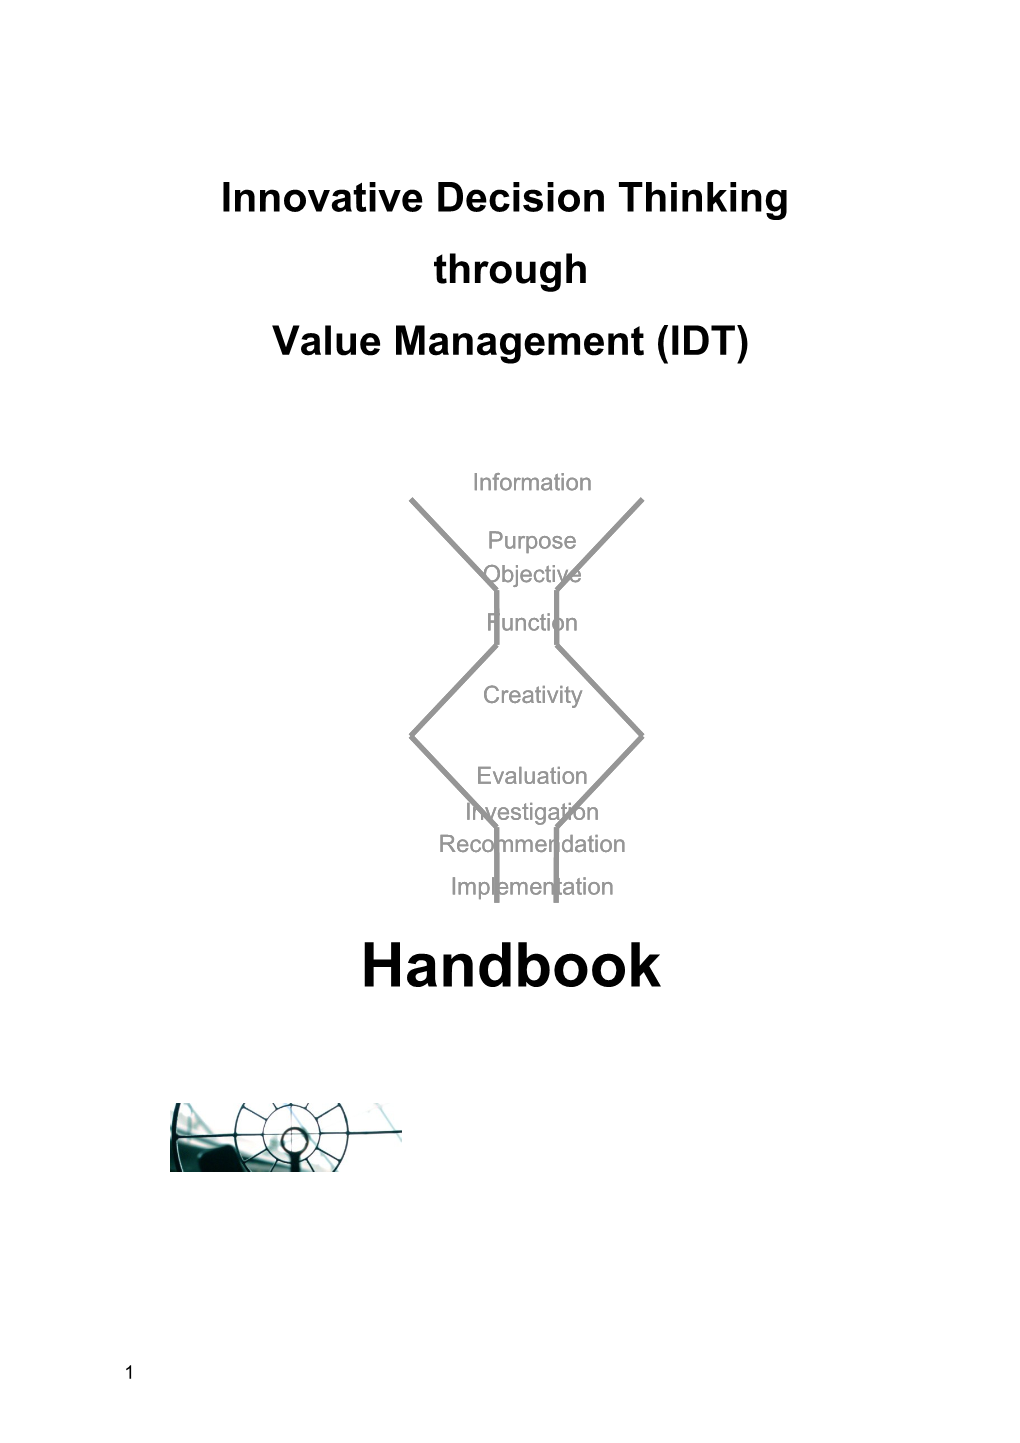 Value Management (IDT)